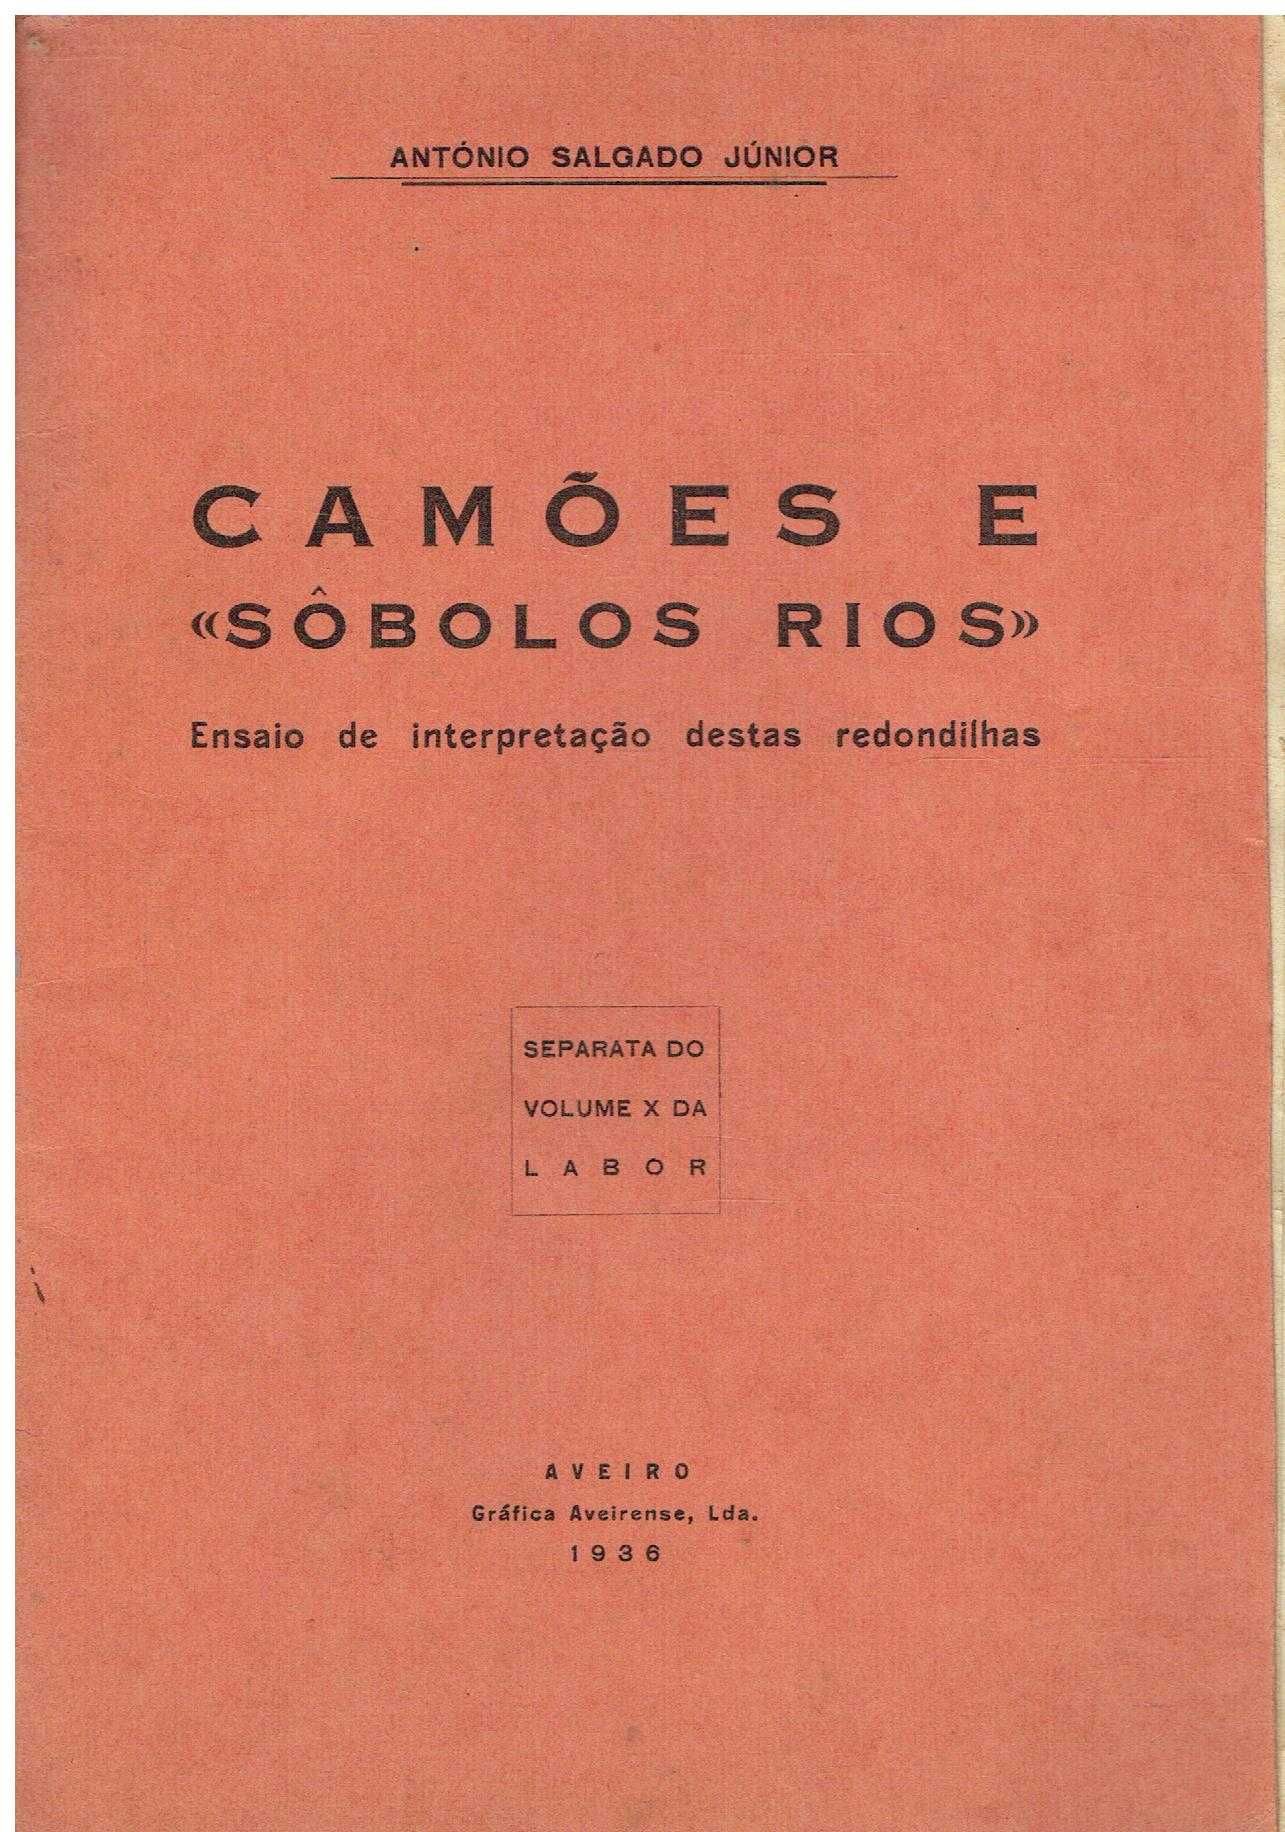 11127

Camões e "sobolos rios" 
de António Salgado Júnior.